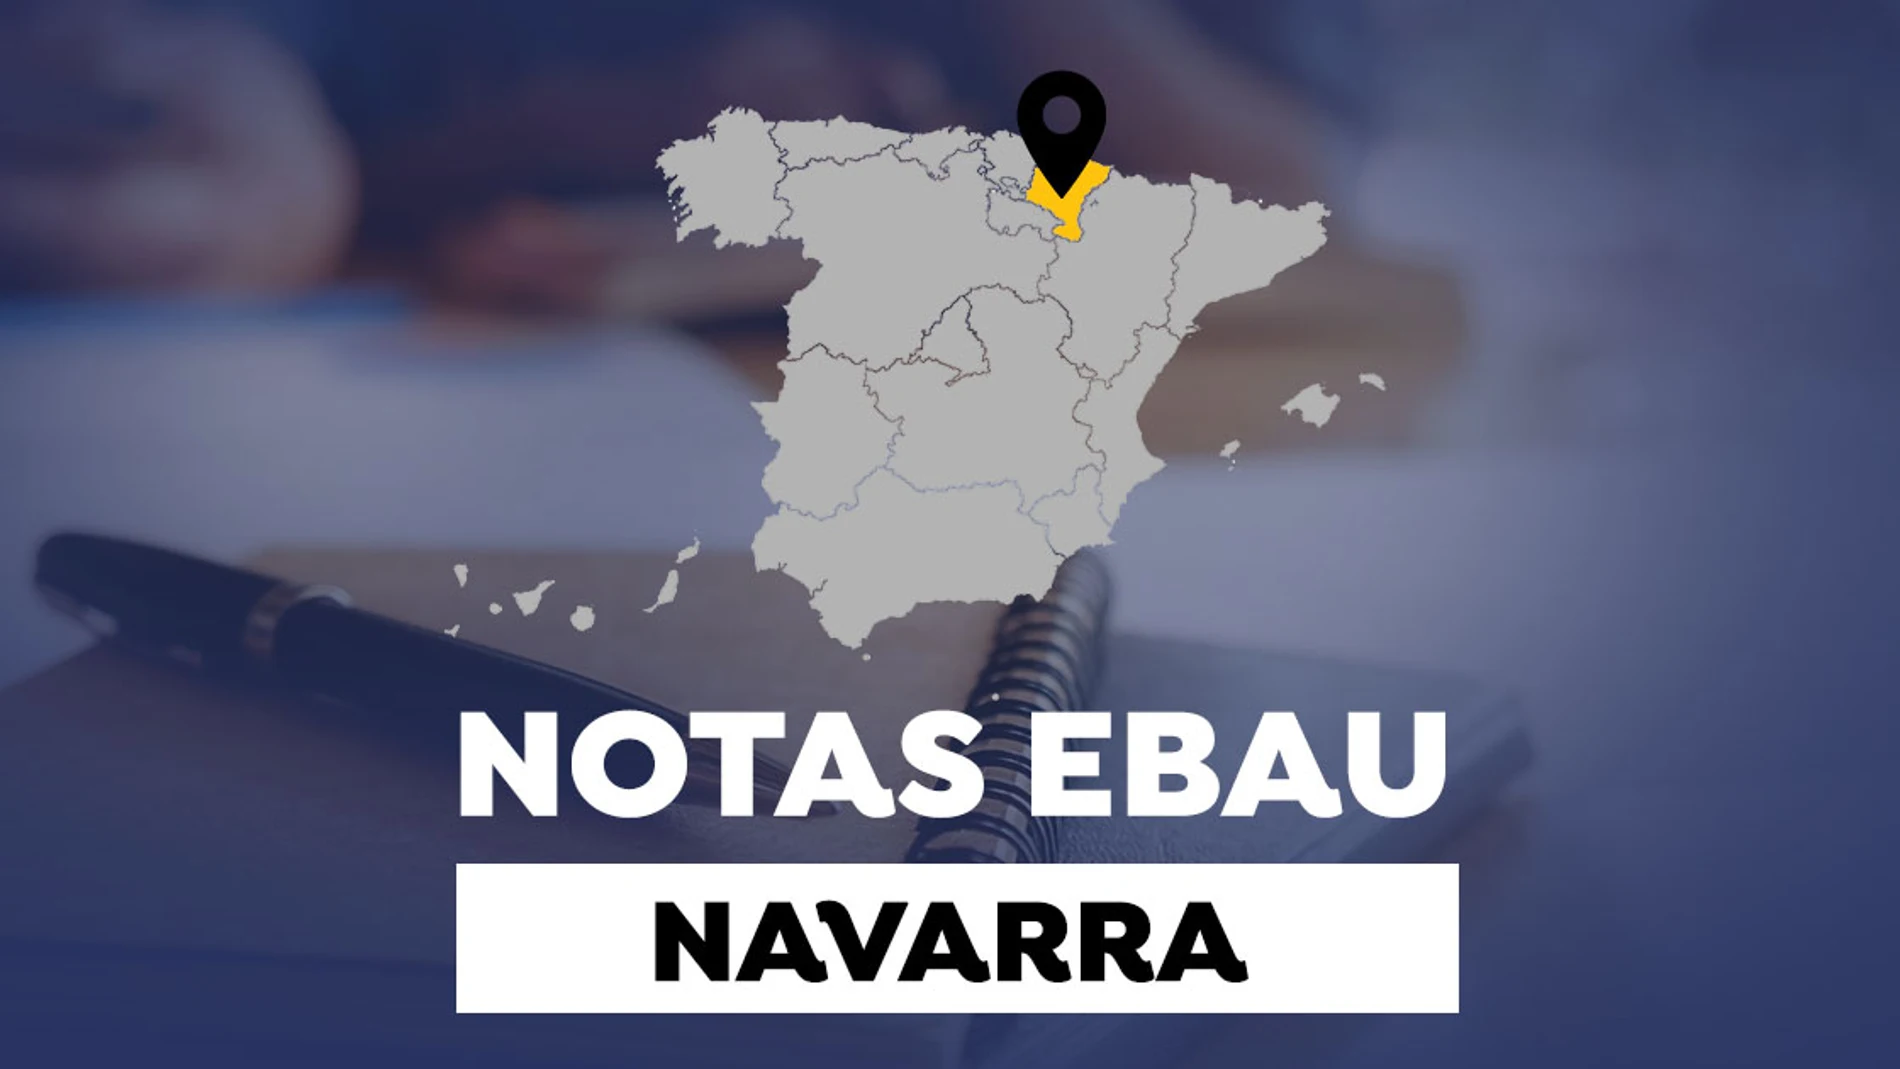 Notas de la EBAU en Navarra 